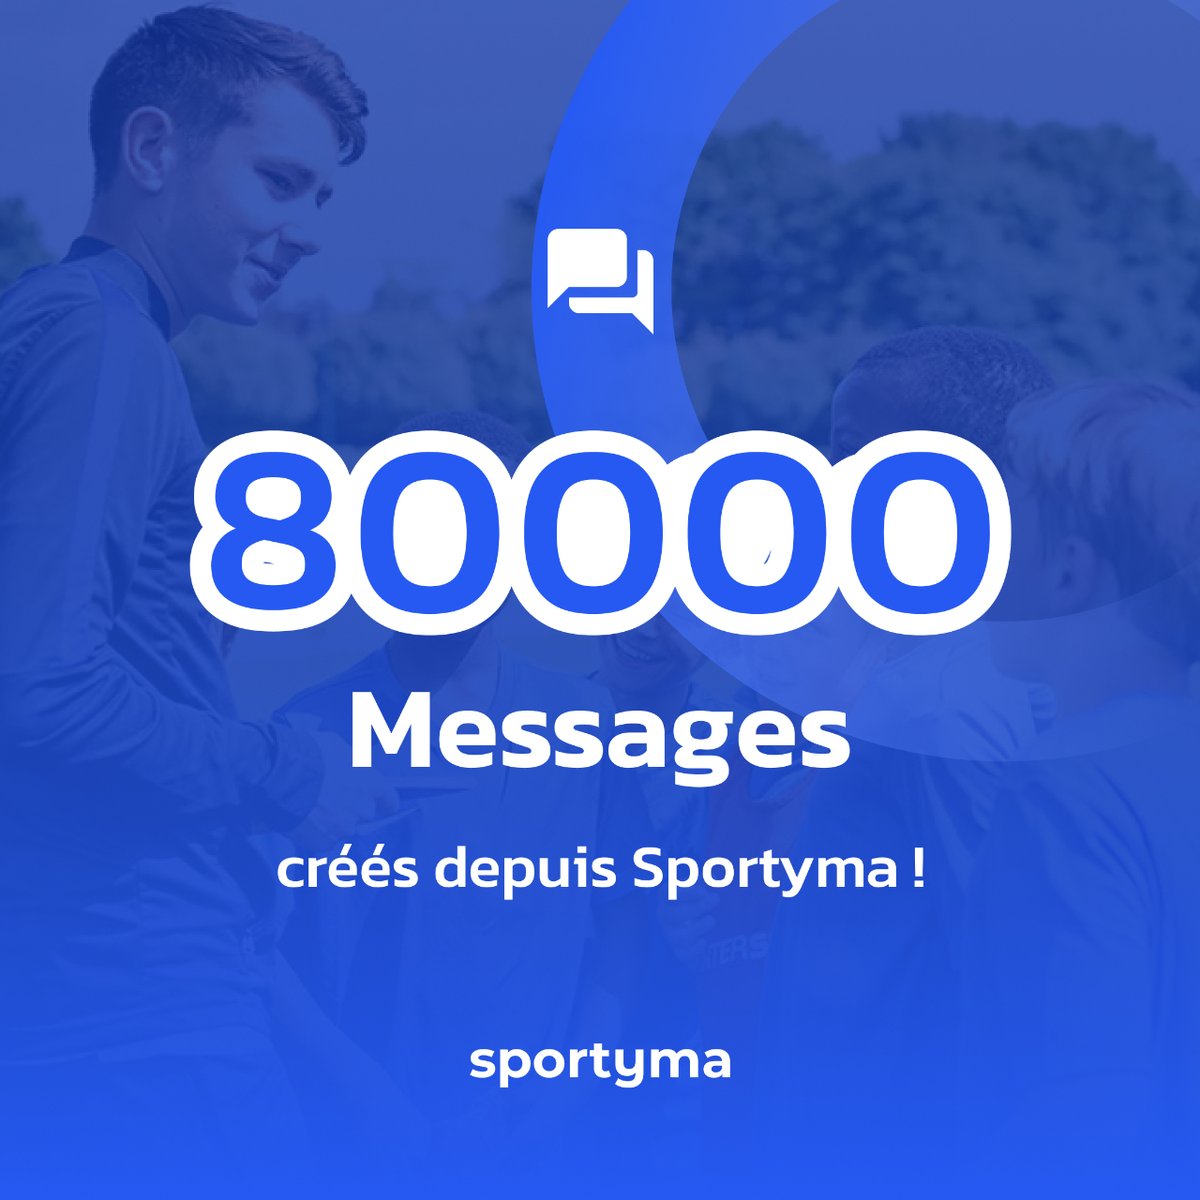 Vous aussi, passez sur la nouvelle messagerie dédiée aux clubs de football ! ⚽️ 📲 ➡️ bit.ly/45Jrosb

#digital #app #football #innovation #clubmanager #messagerie